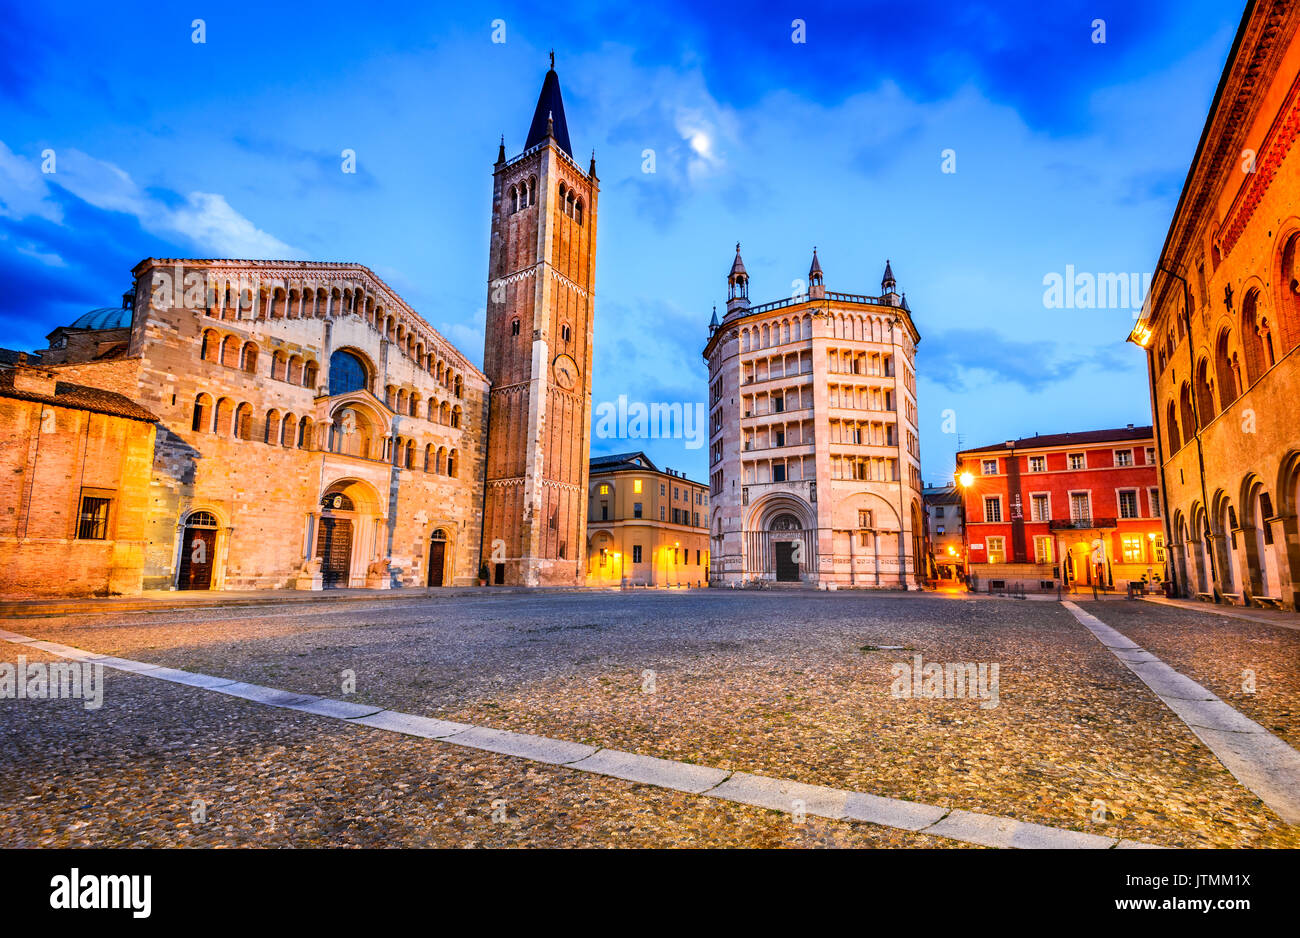 Parma, Italien - Piazza del Duomo mit dem Dom und Baptisterium, im Jahr 1059 gebaut. Die romanische Architektur in der Emilia-Romagna. Stockfoto